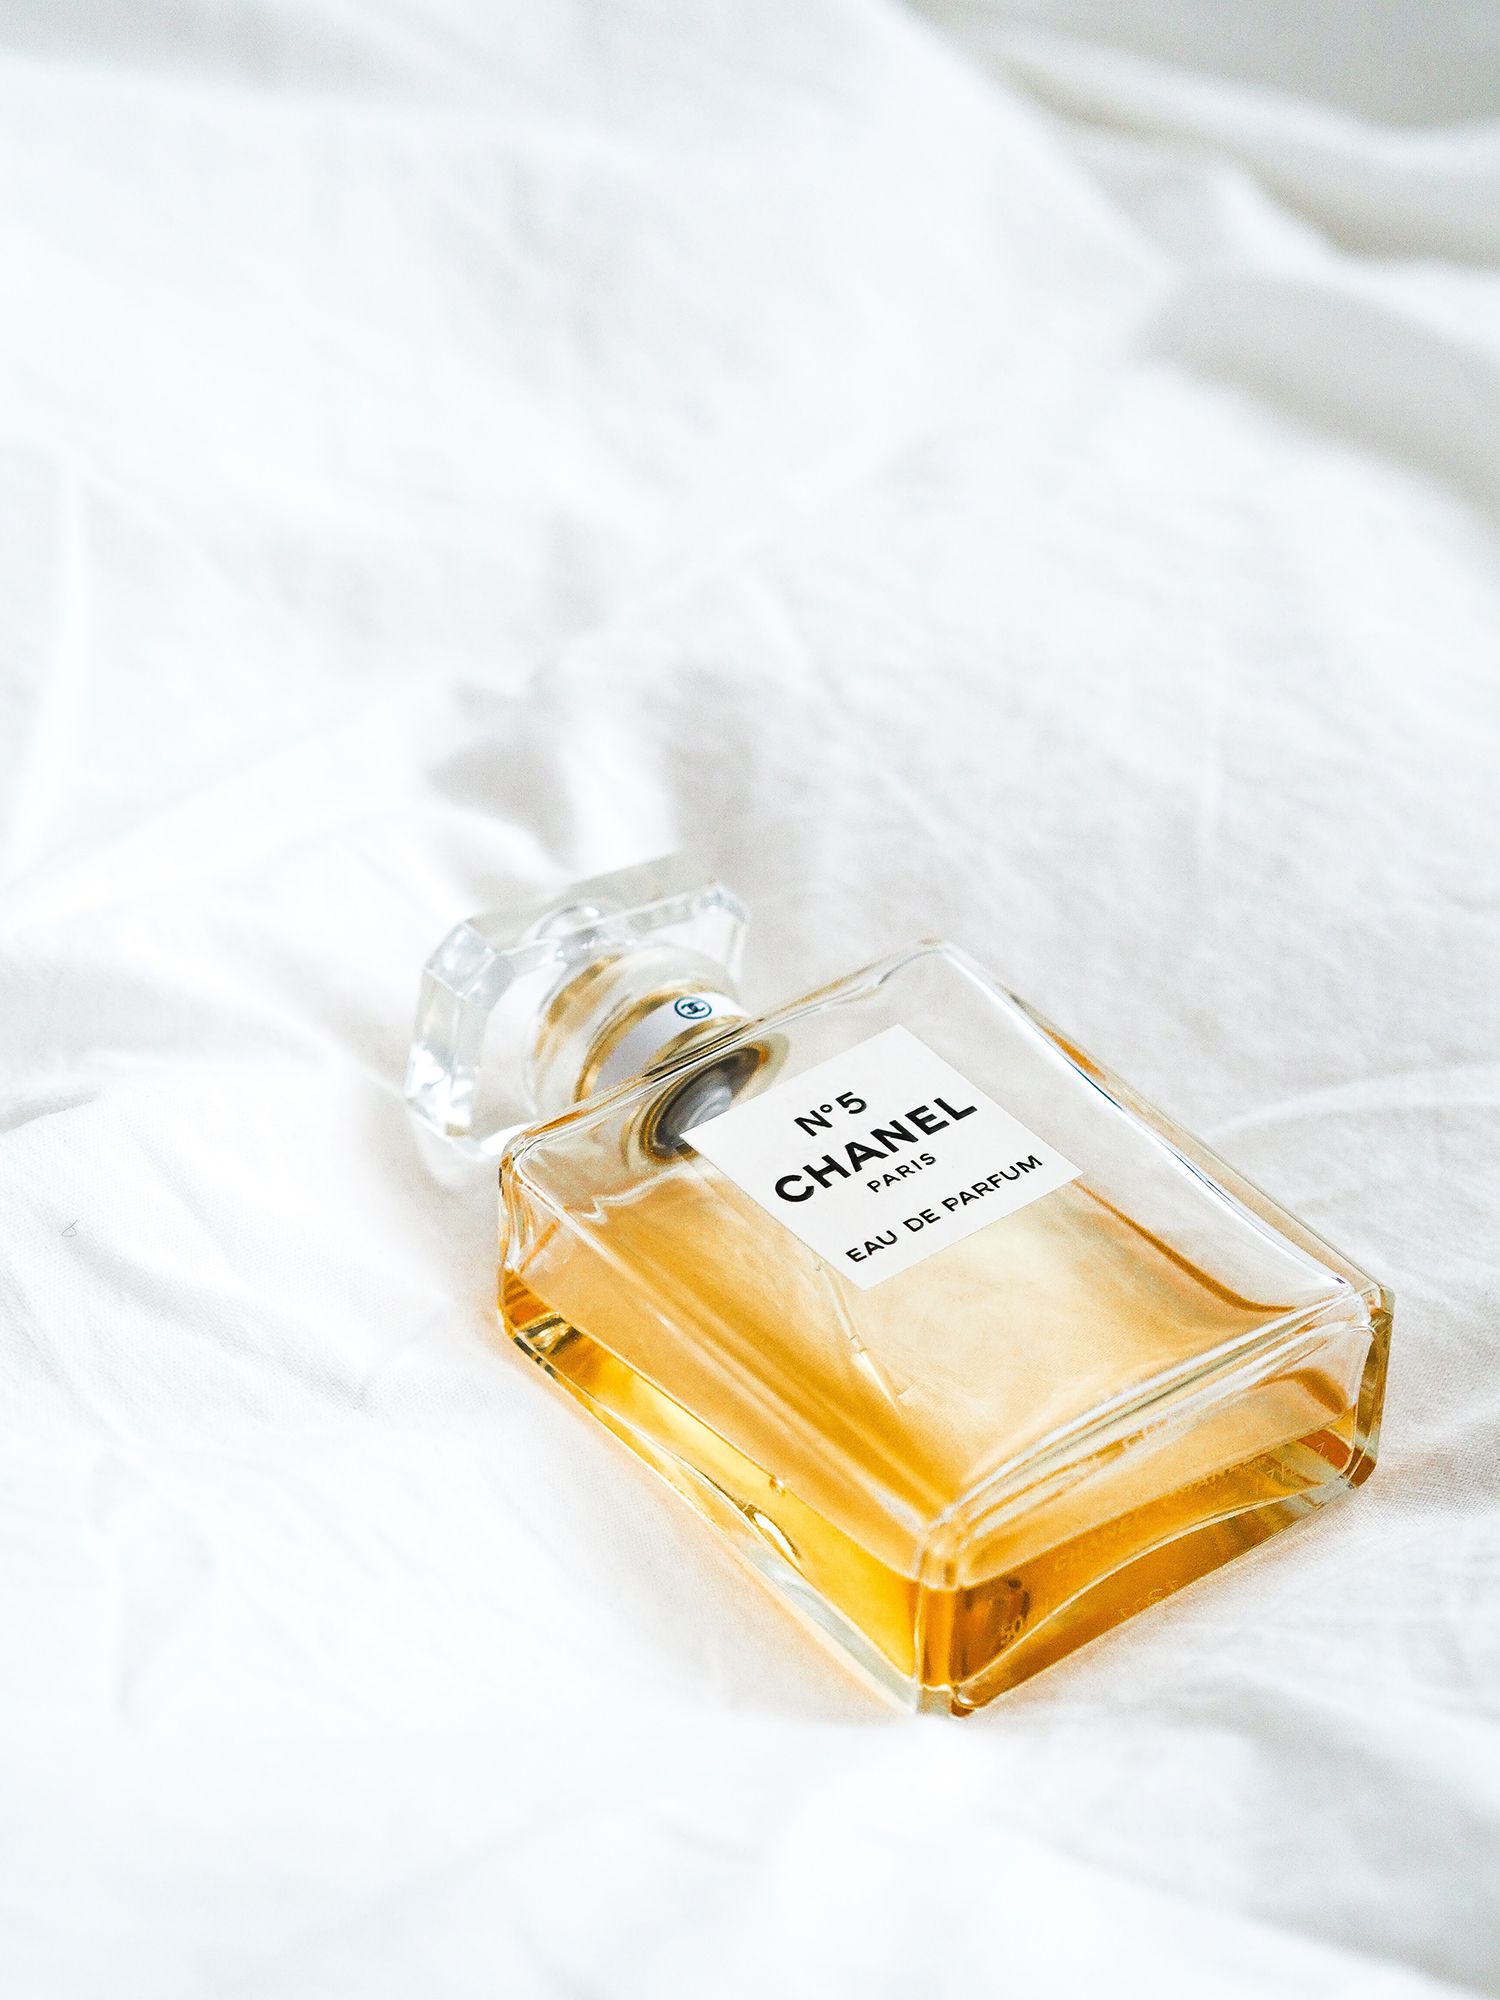 Chanel n5 prezzi e novità dello storico profumo per la primavera 2014   Fashionblog